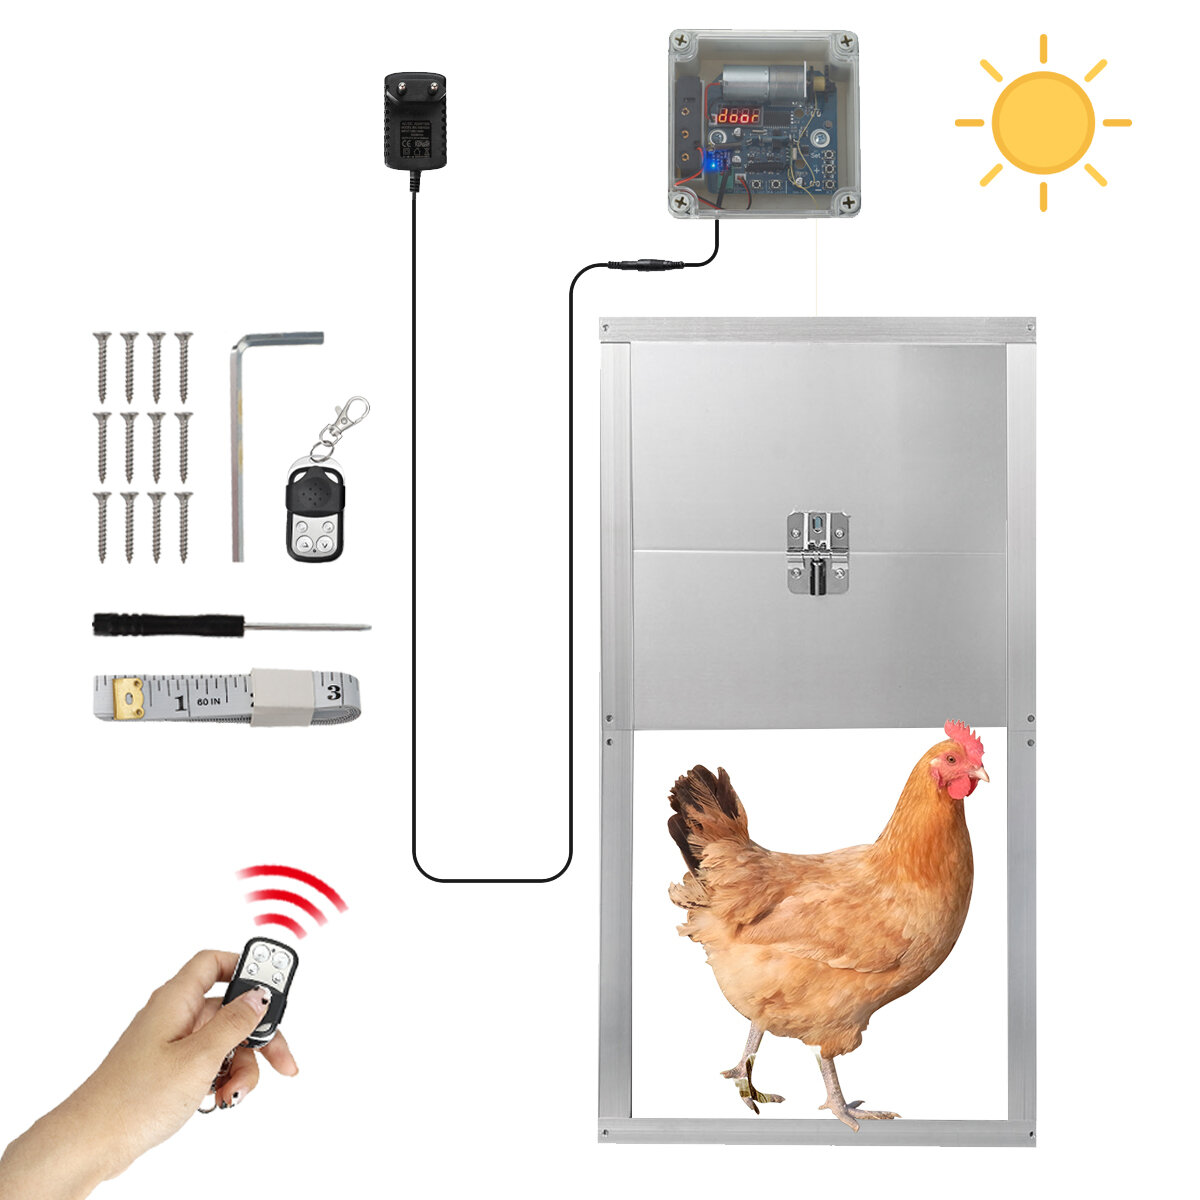 

Waterproof Automatic Chicken Coop Door Opener Remote Control Timer for Chicken Hens and Ducks